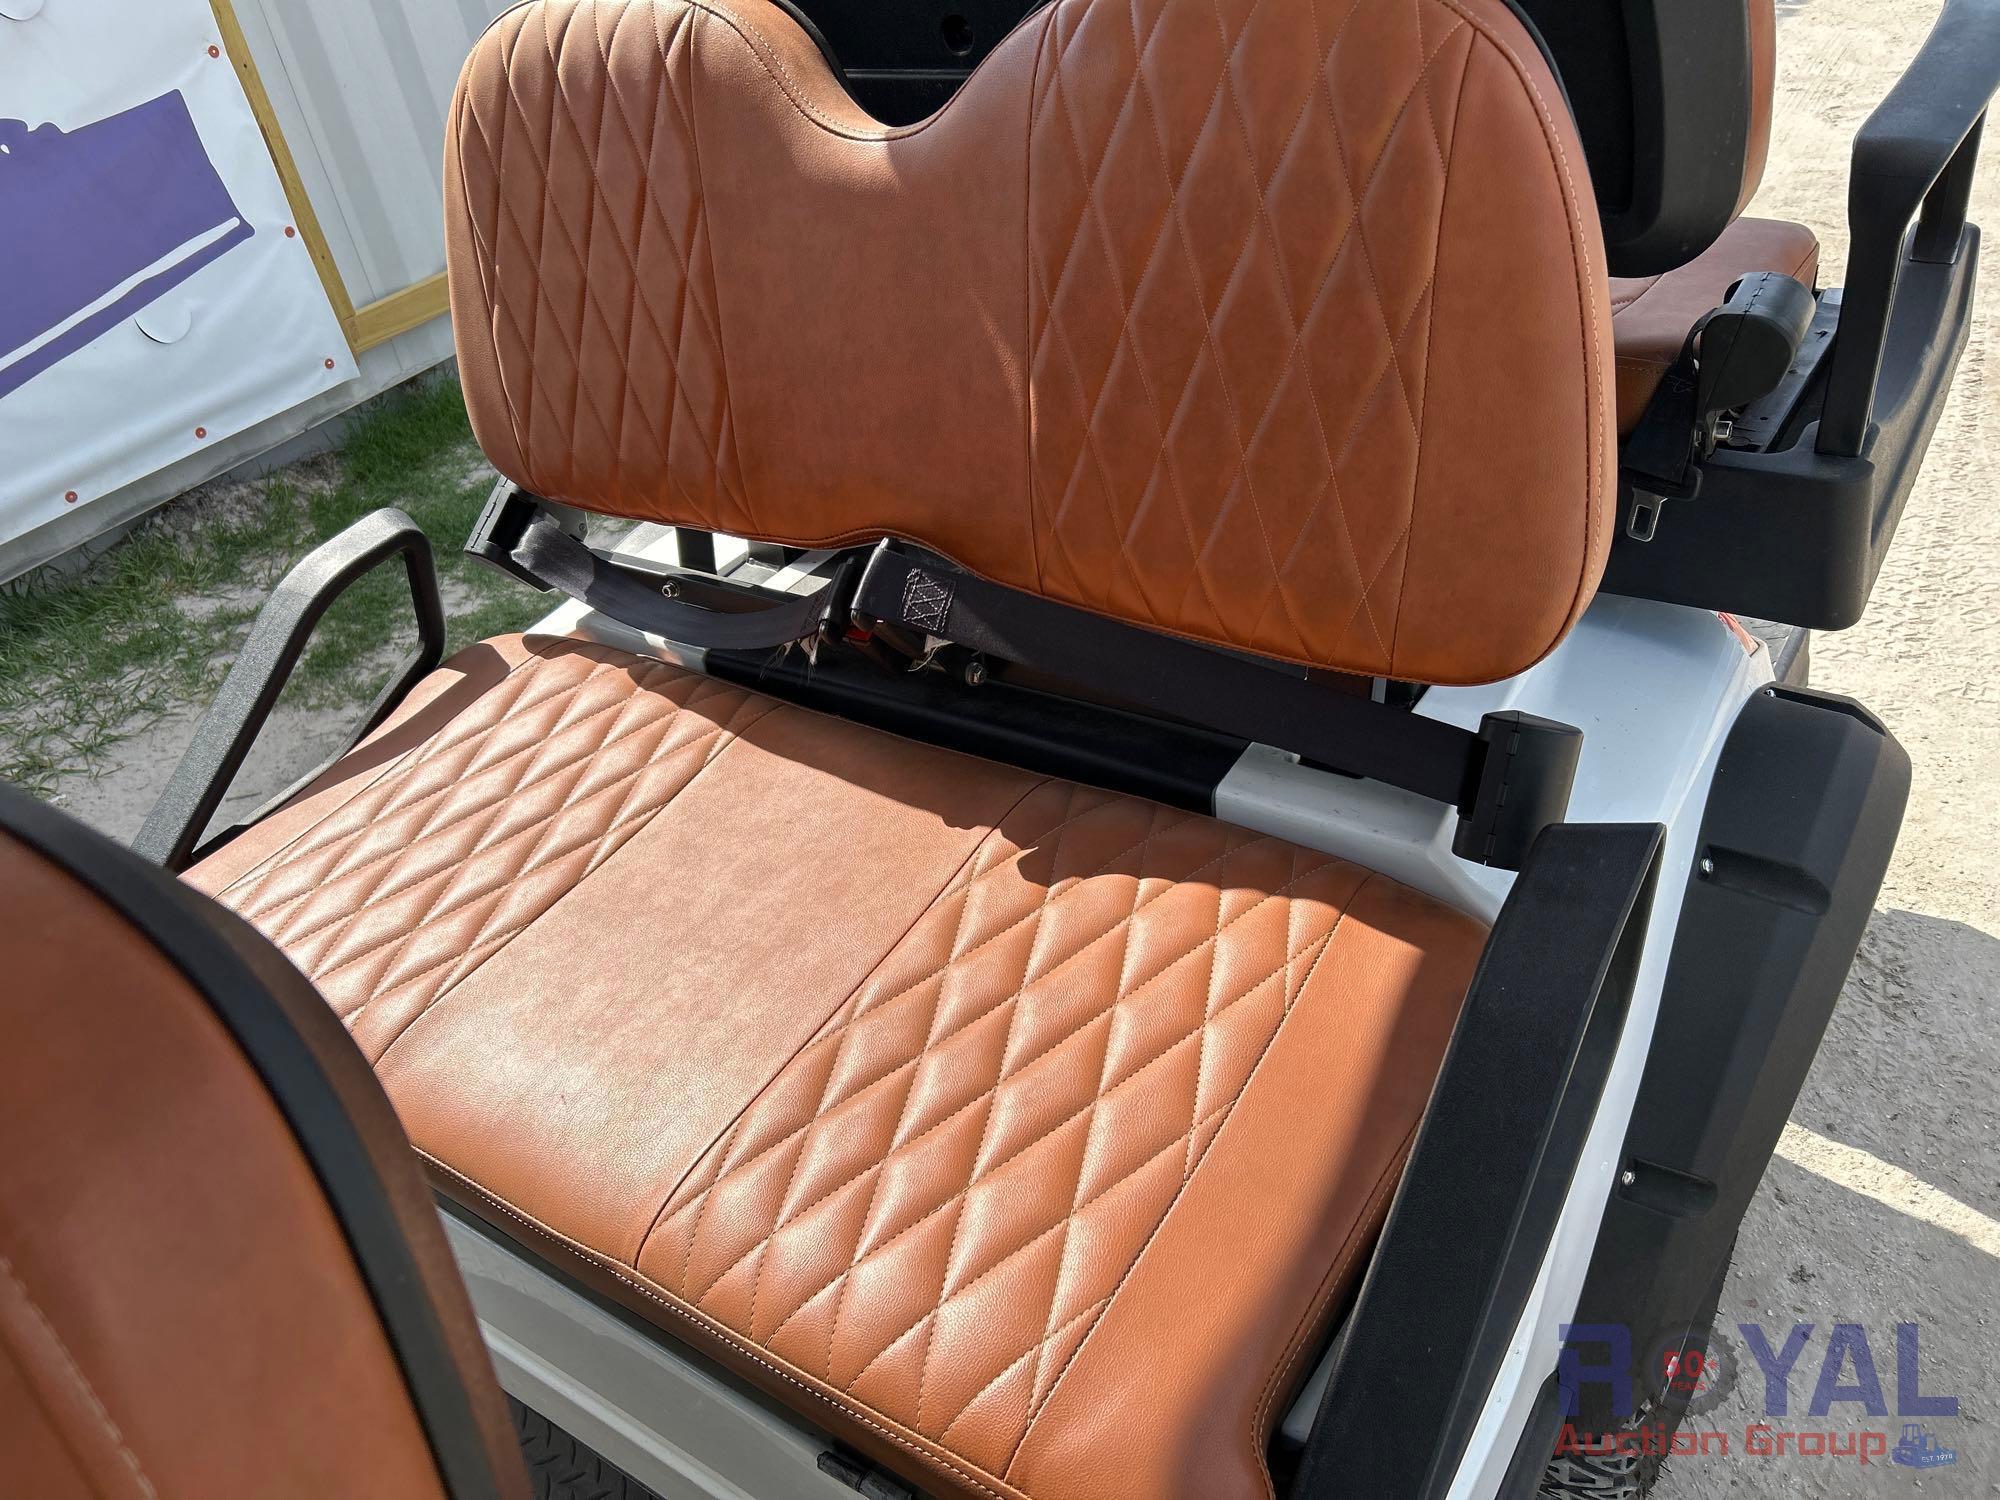 2021 LS2040ASZ 6 Seat Golf Cart